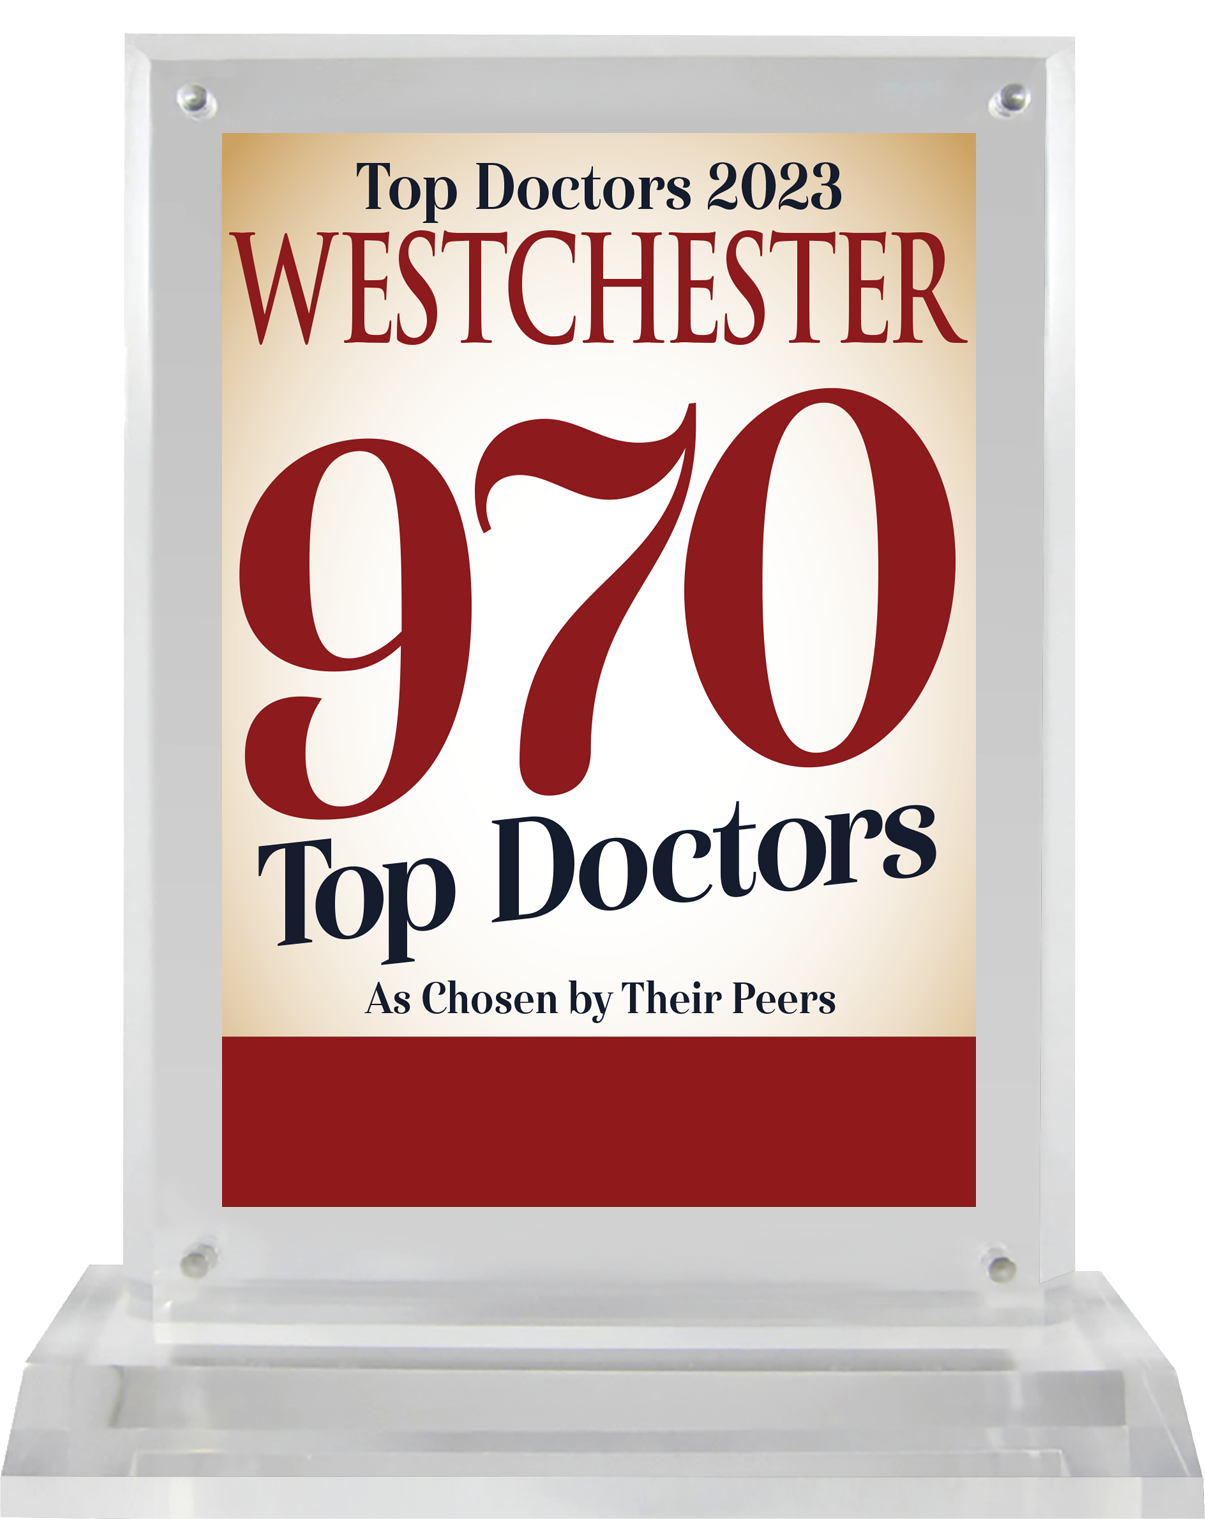 Westchester Magazine Top Doctors 2023 Plaque Castle Connolly Top